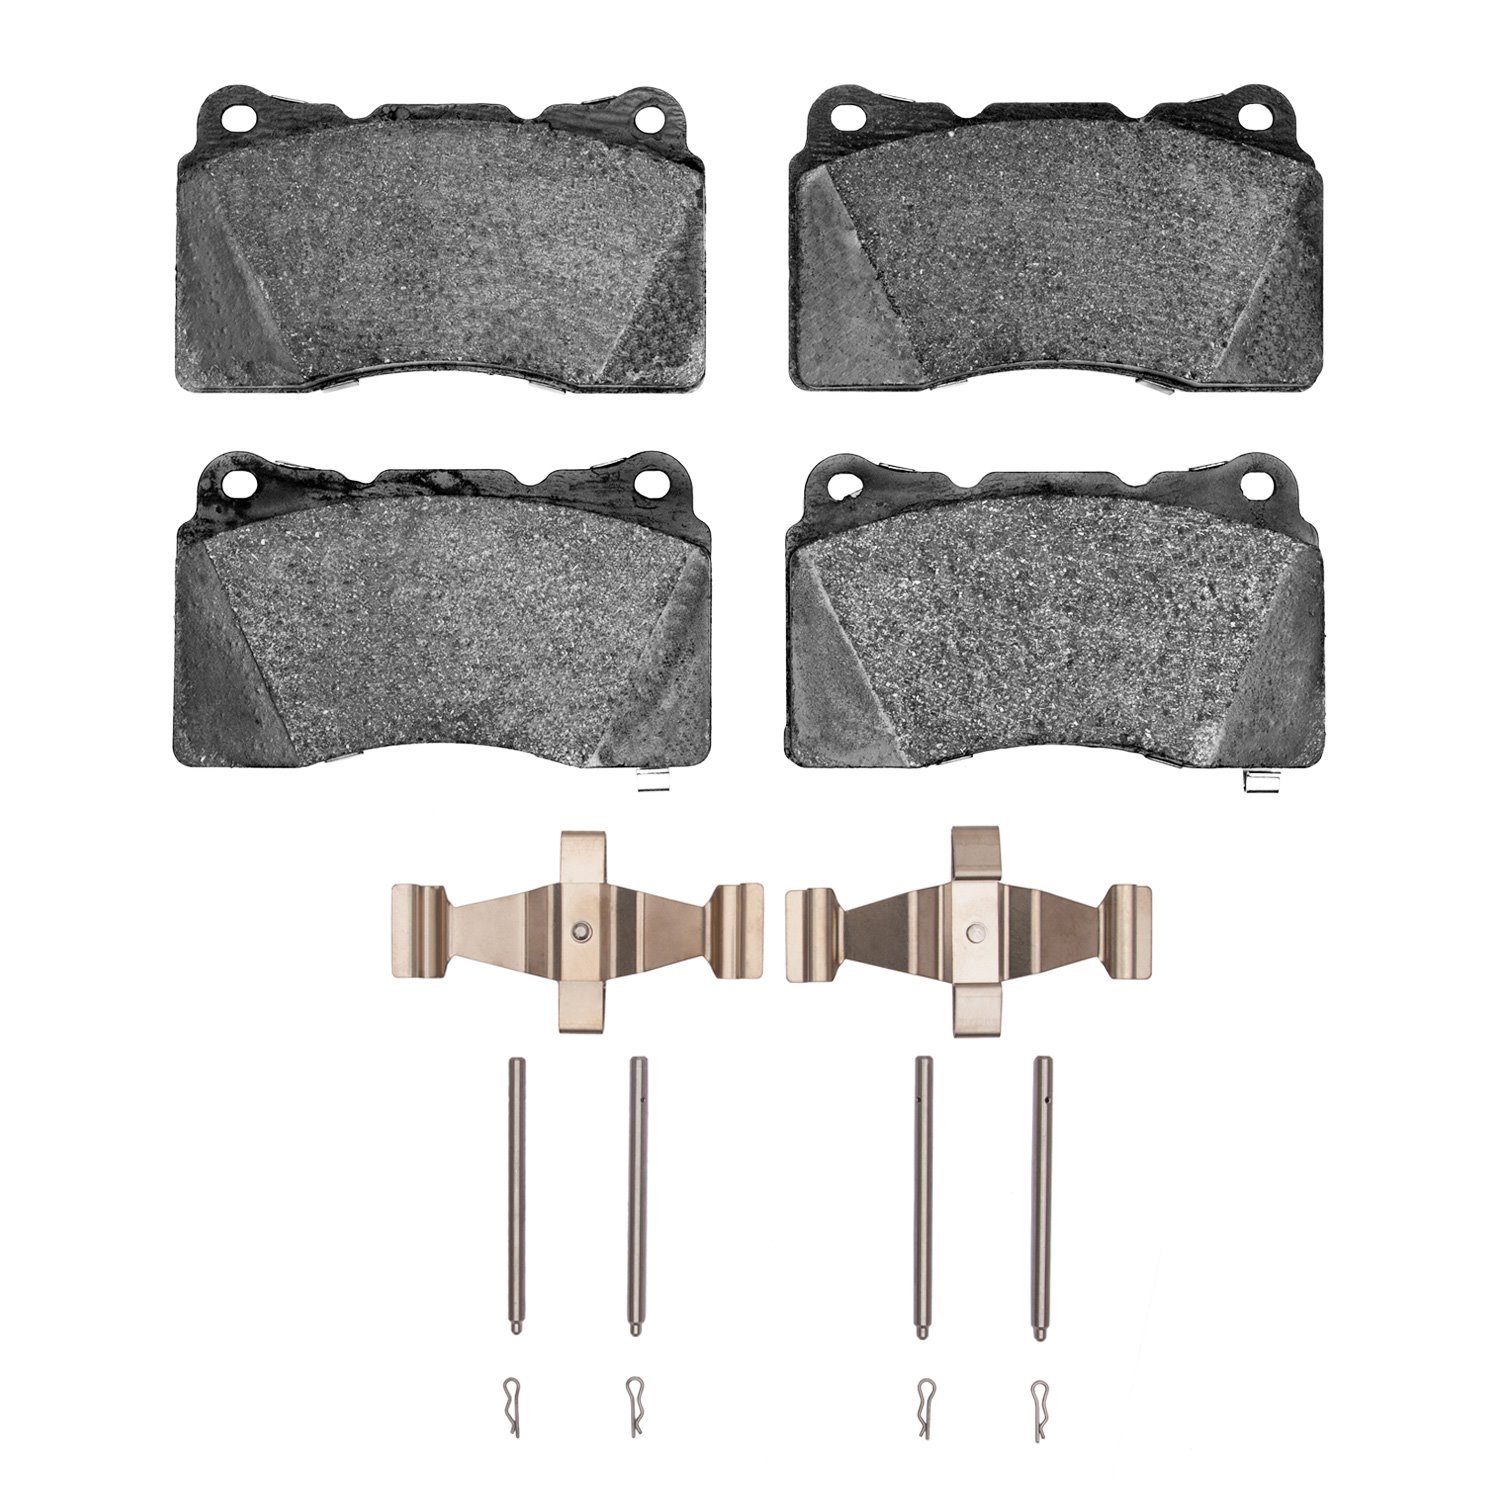 Ceramic Brake Pads & Hardware Kit, 2003-2020 Fits Multiple Makes/Models, Position: Front